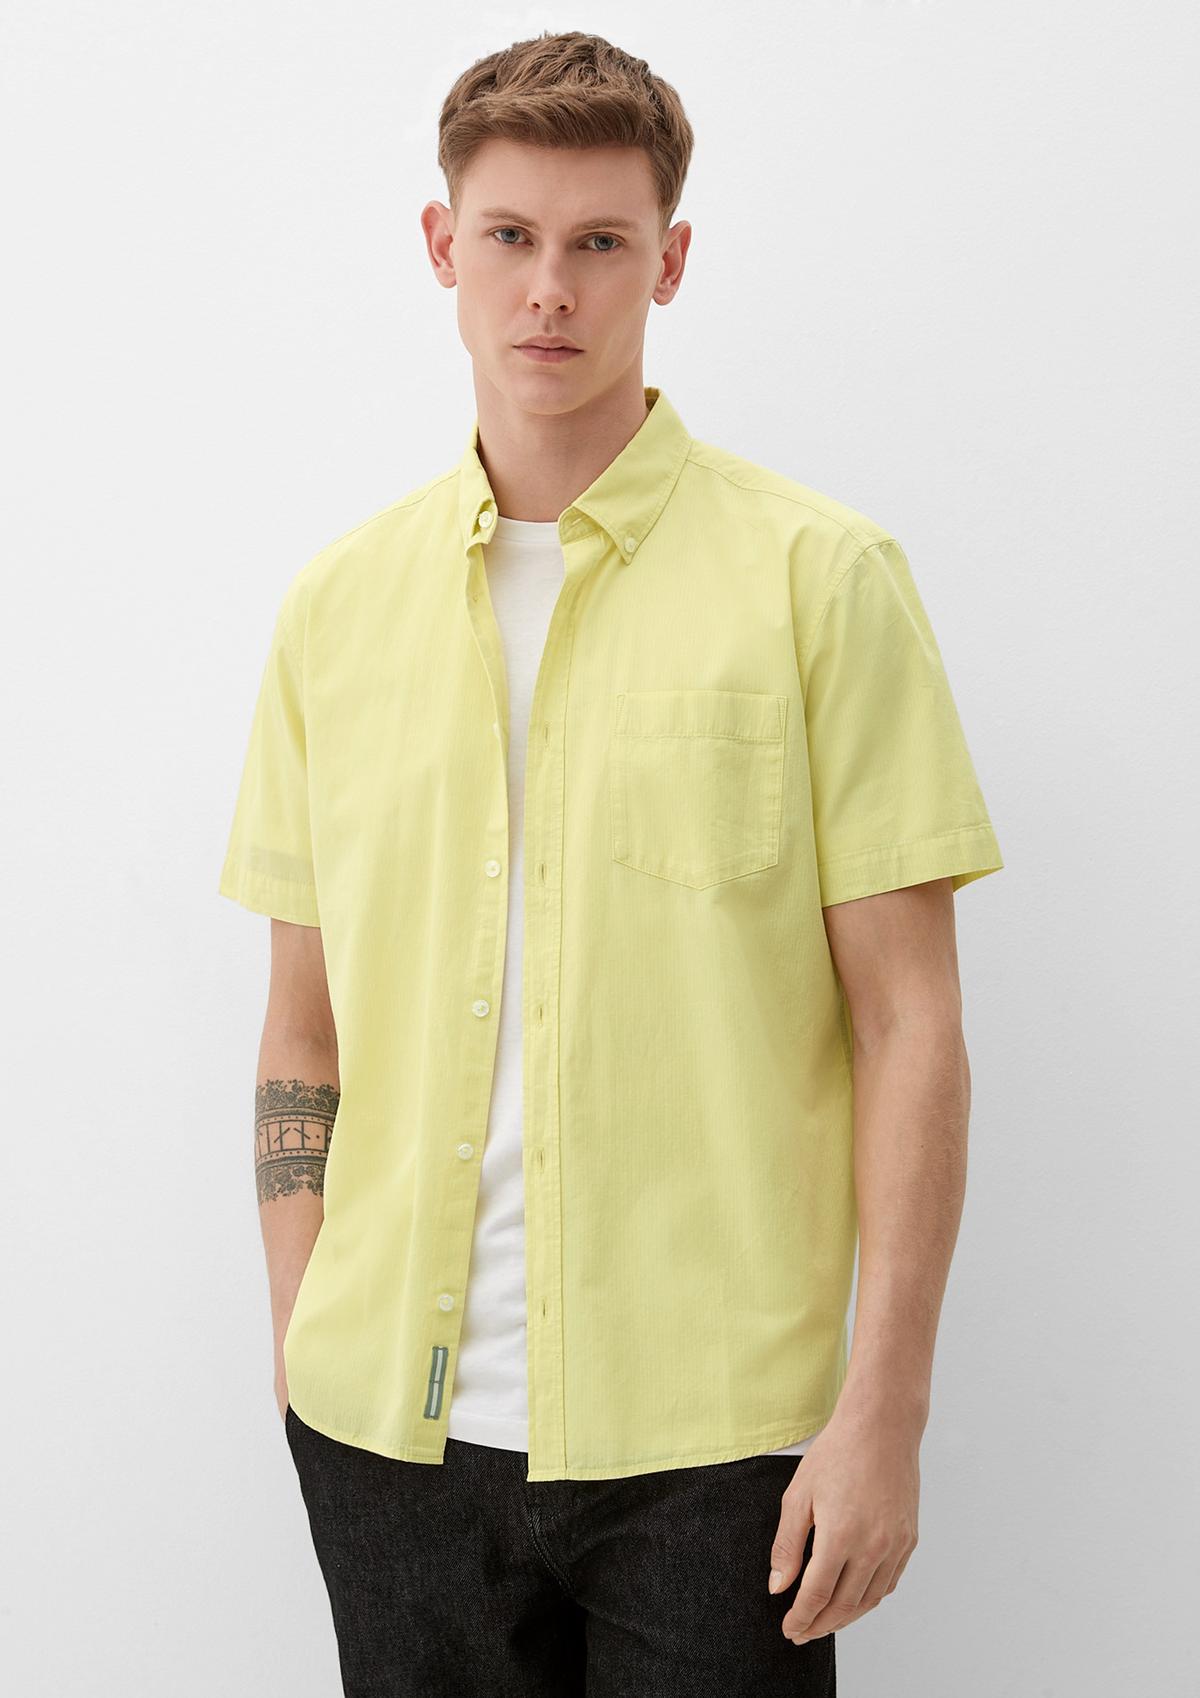 Kurzarm-Hemden & Halbarm-Hemden für Herren online kaufen